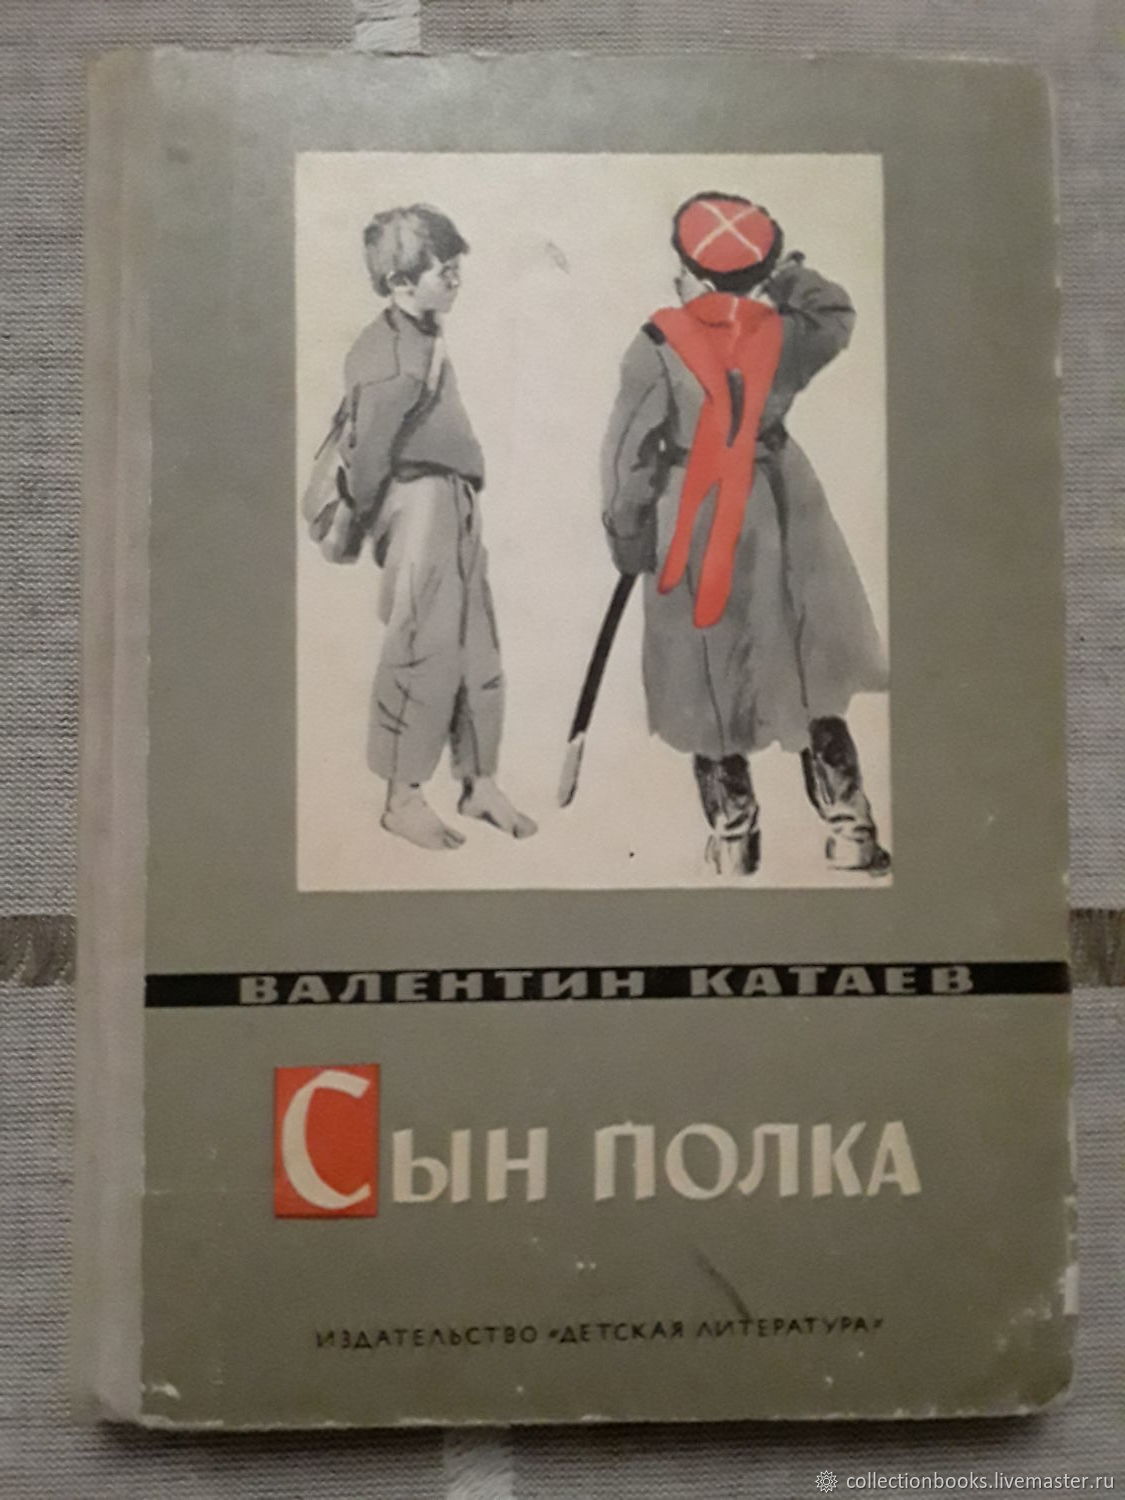 Обложка книги Валентина Катаева сын полка